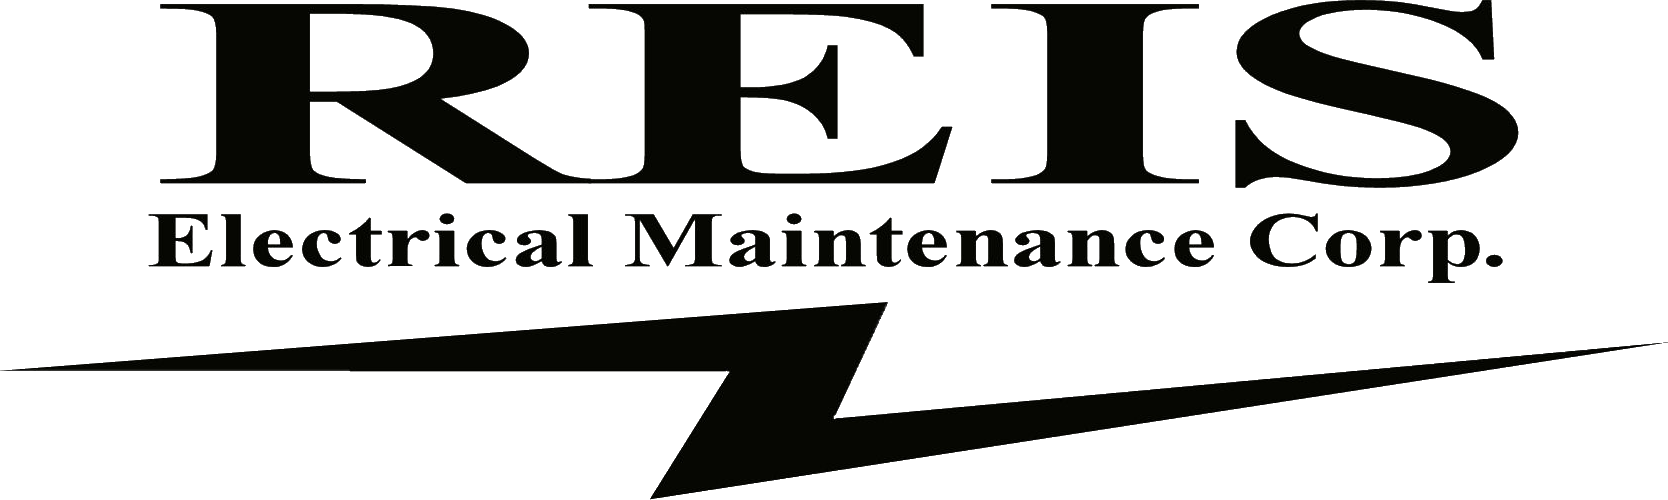 Client 4 Logo